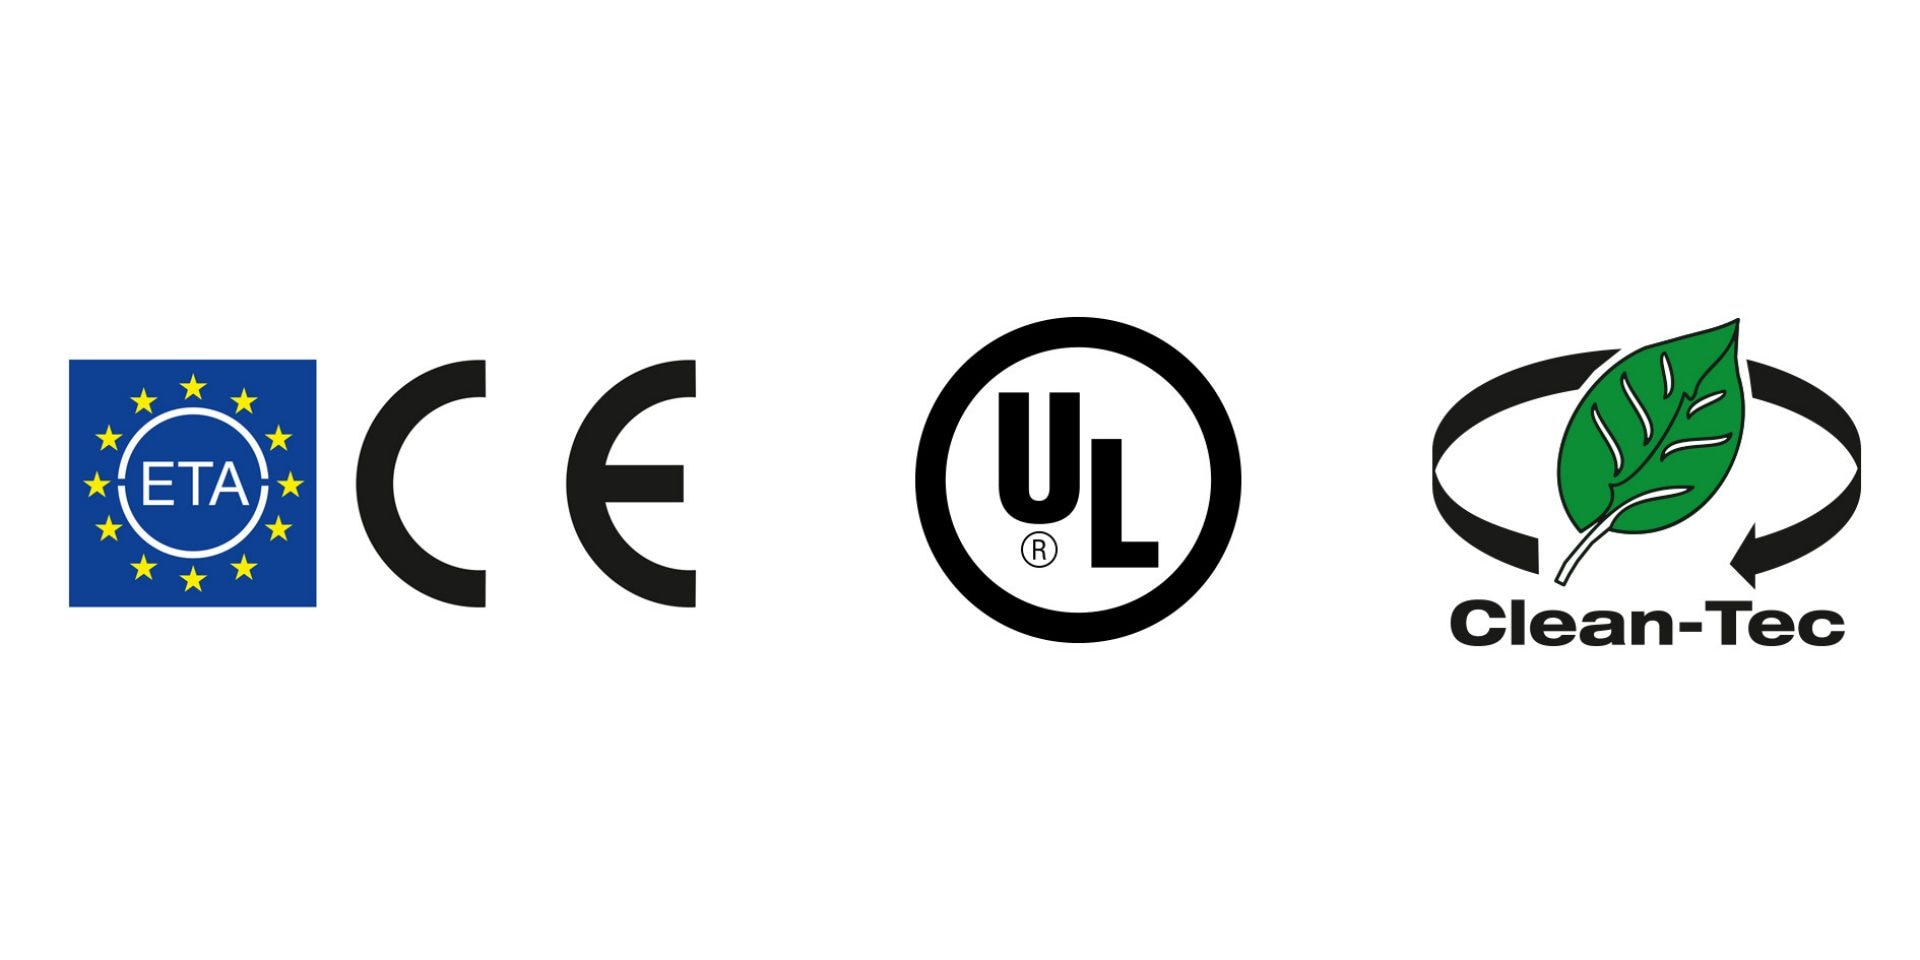 Logo delle omologazioni ETA e CE, più il logo Hilti Clean-Tec